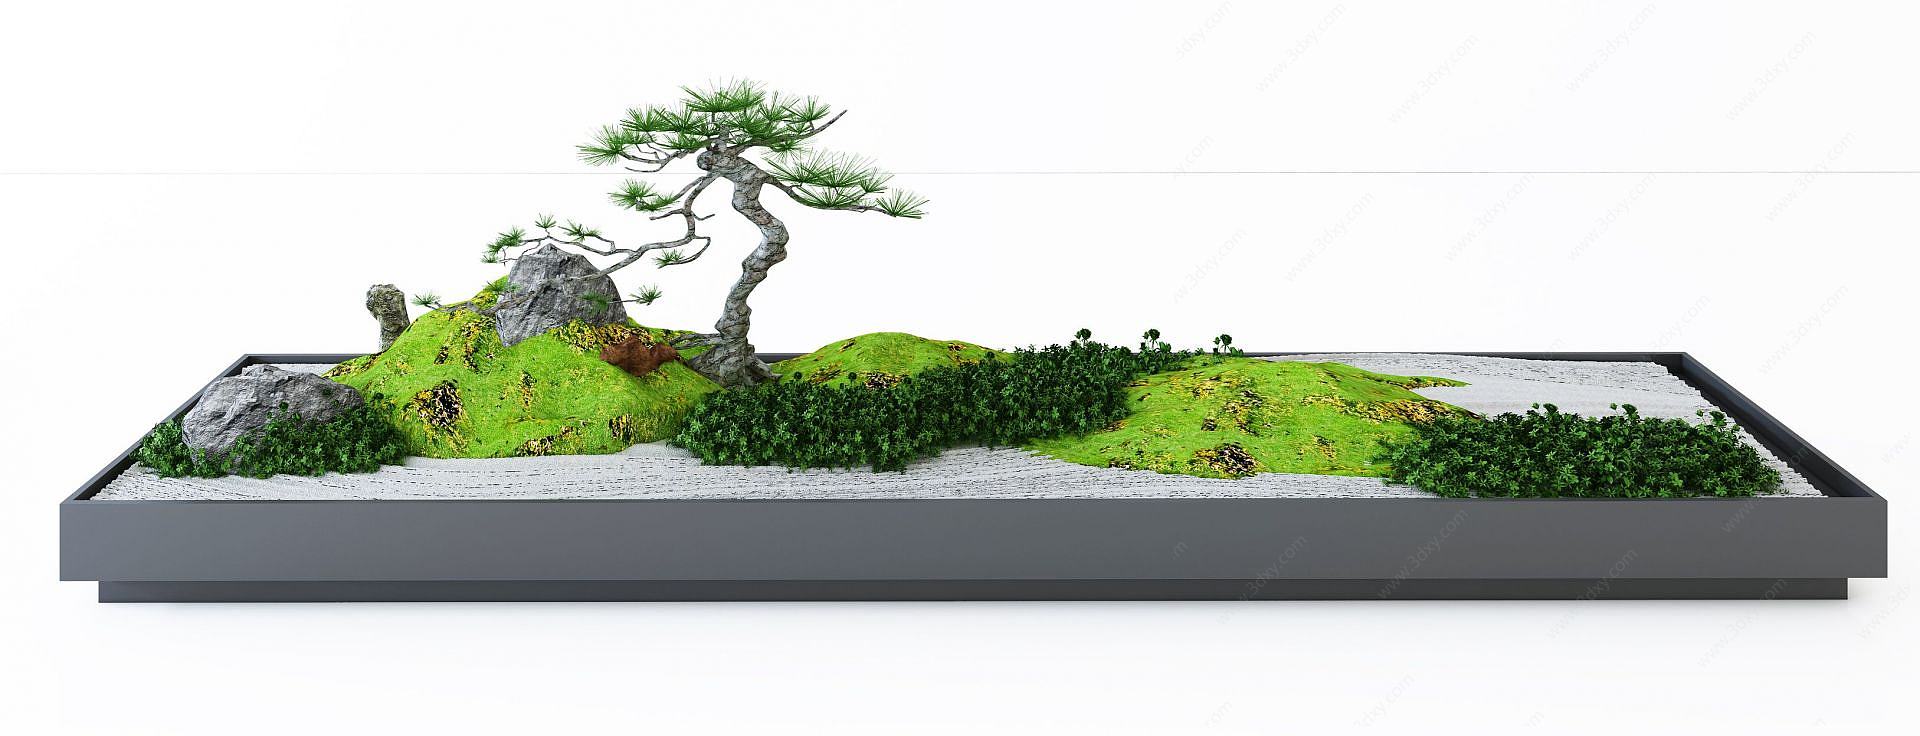 植物盆景园林小景3D模型